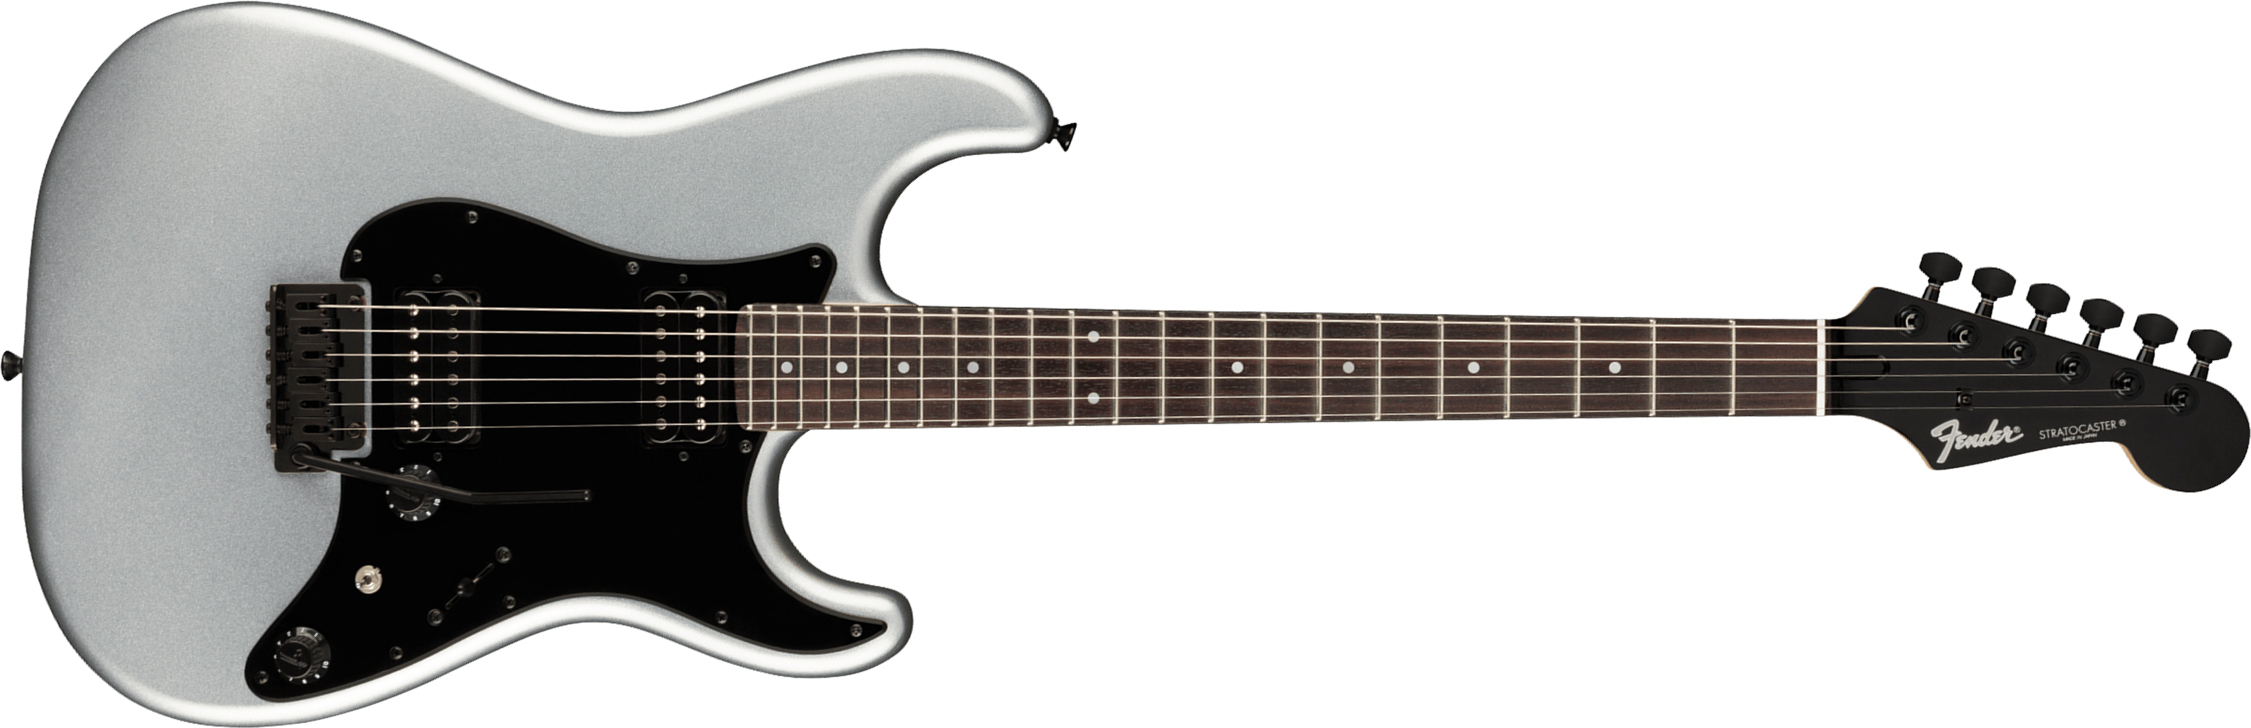 Fender Strat Boxer Hh Jap Trem Rw +housse - Inca Silver - Str shape electric guitar - Main picture